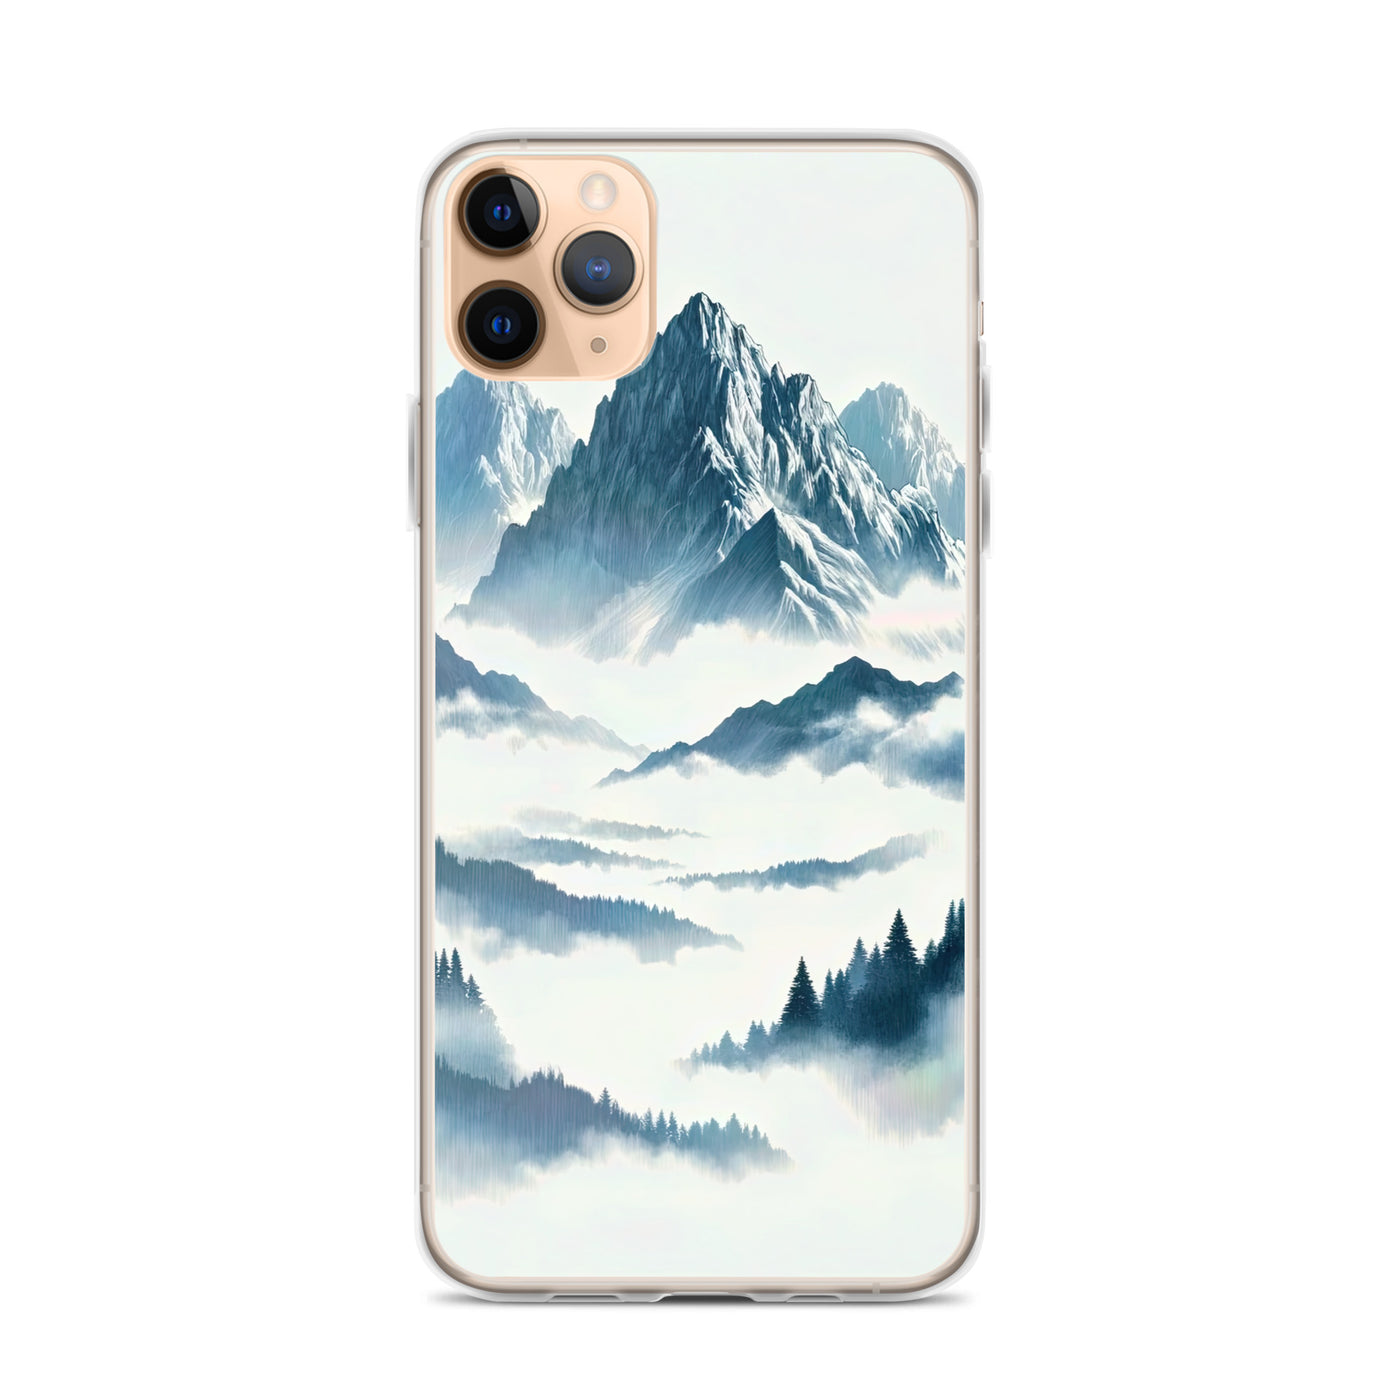 Nebeliger Alpenmorgen-Essenz, verdeckte Täler und Wälder - iPhone Schutzhülle (durchsichtig) berge xxx yyy zzz iPhone 11 Pro Max